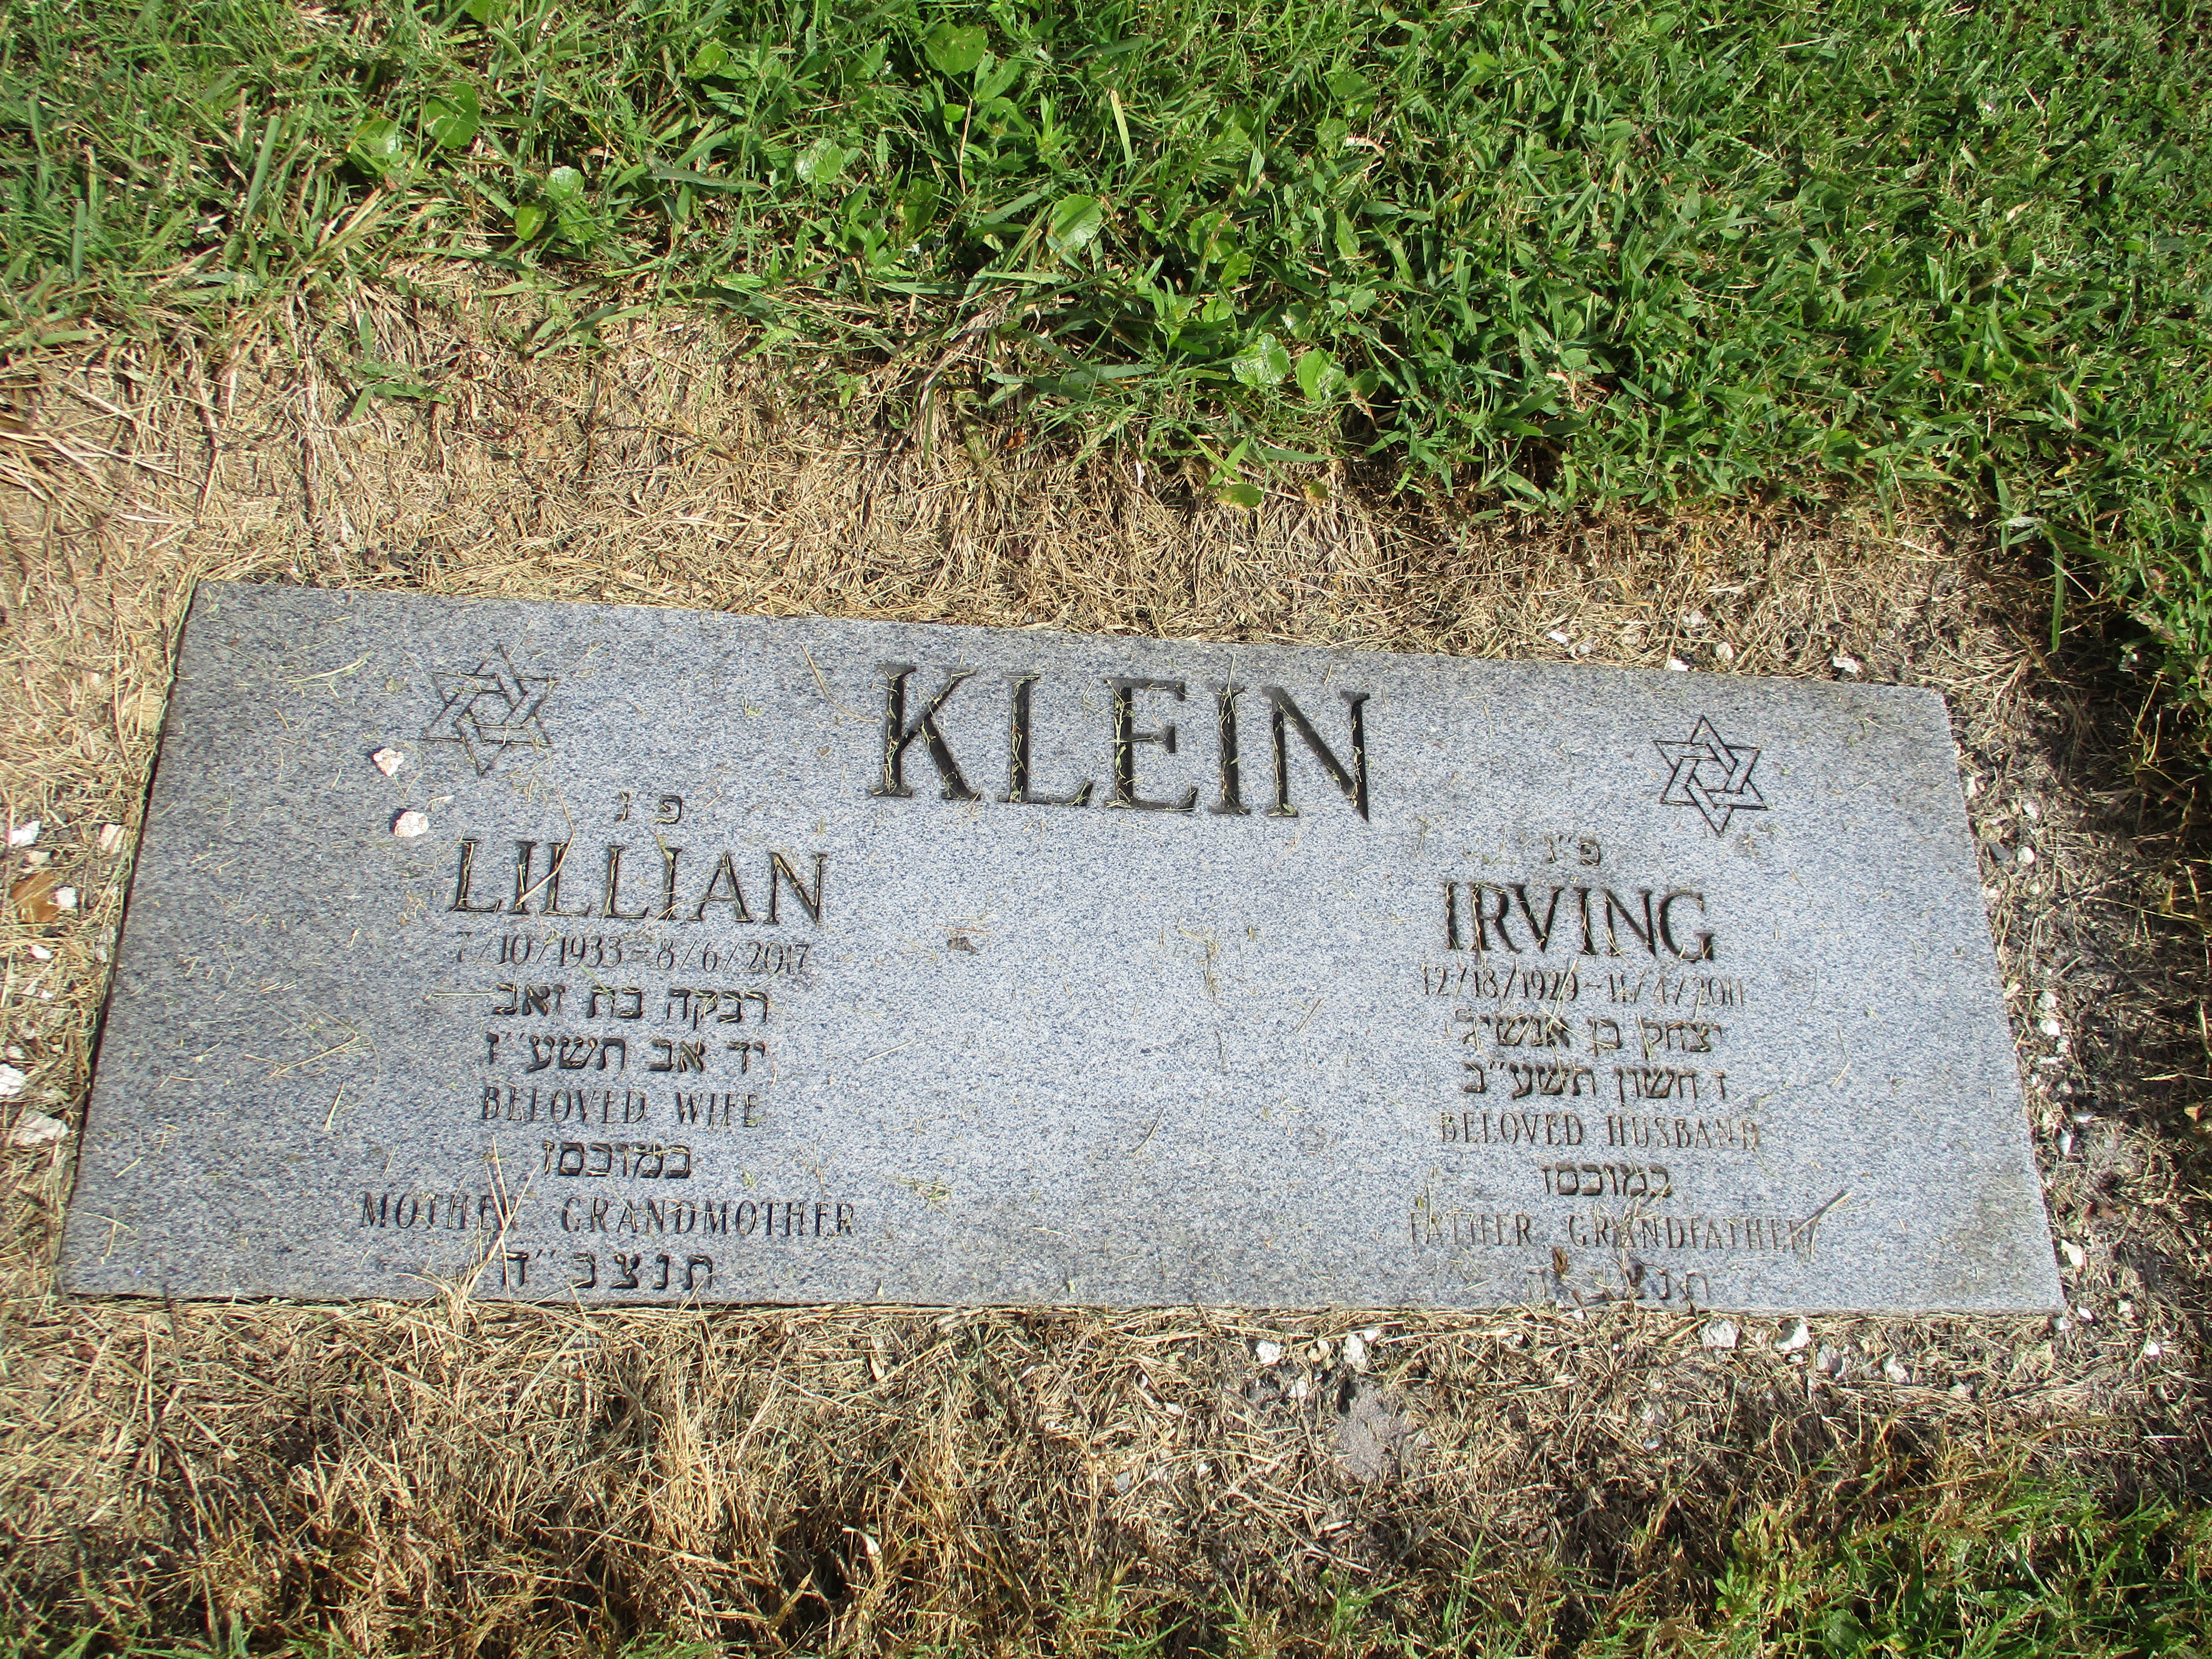 Lillian Klein